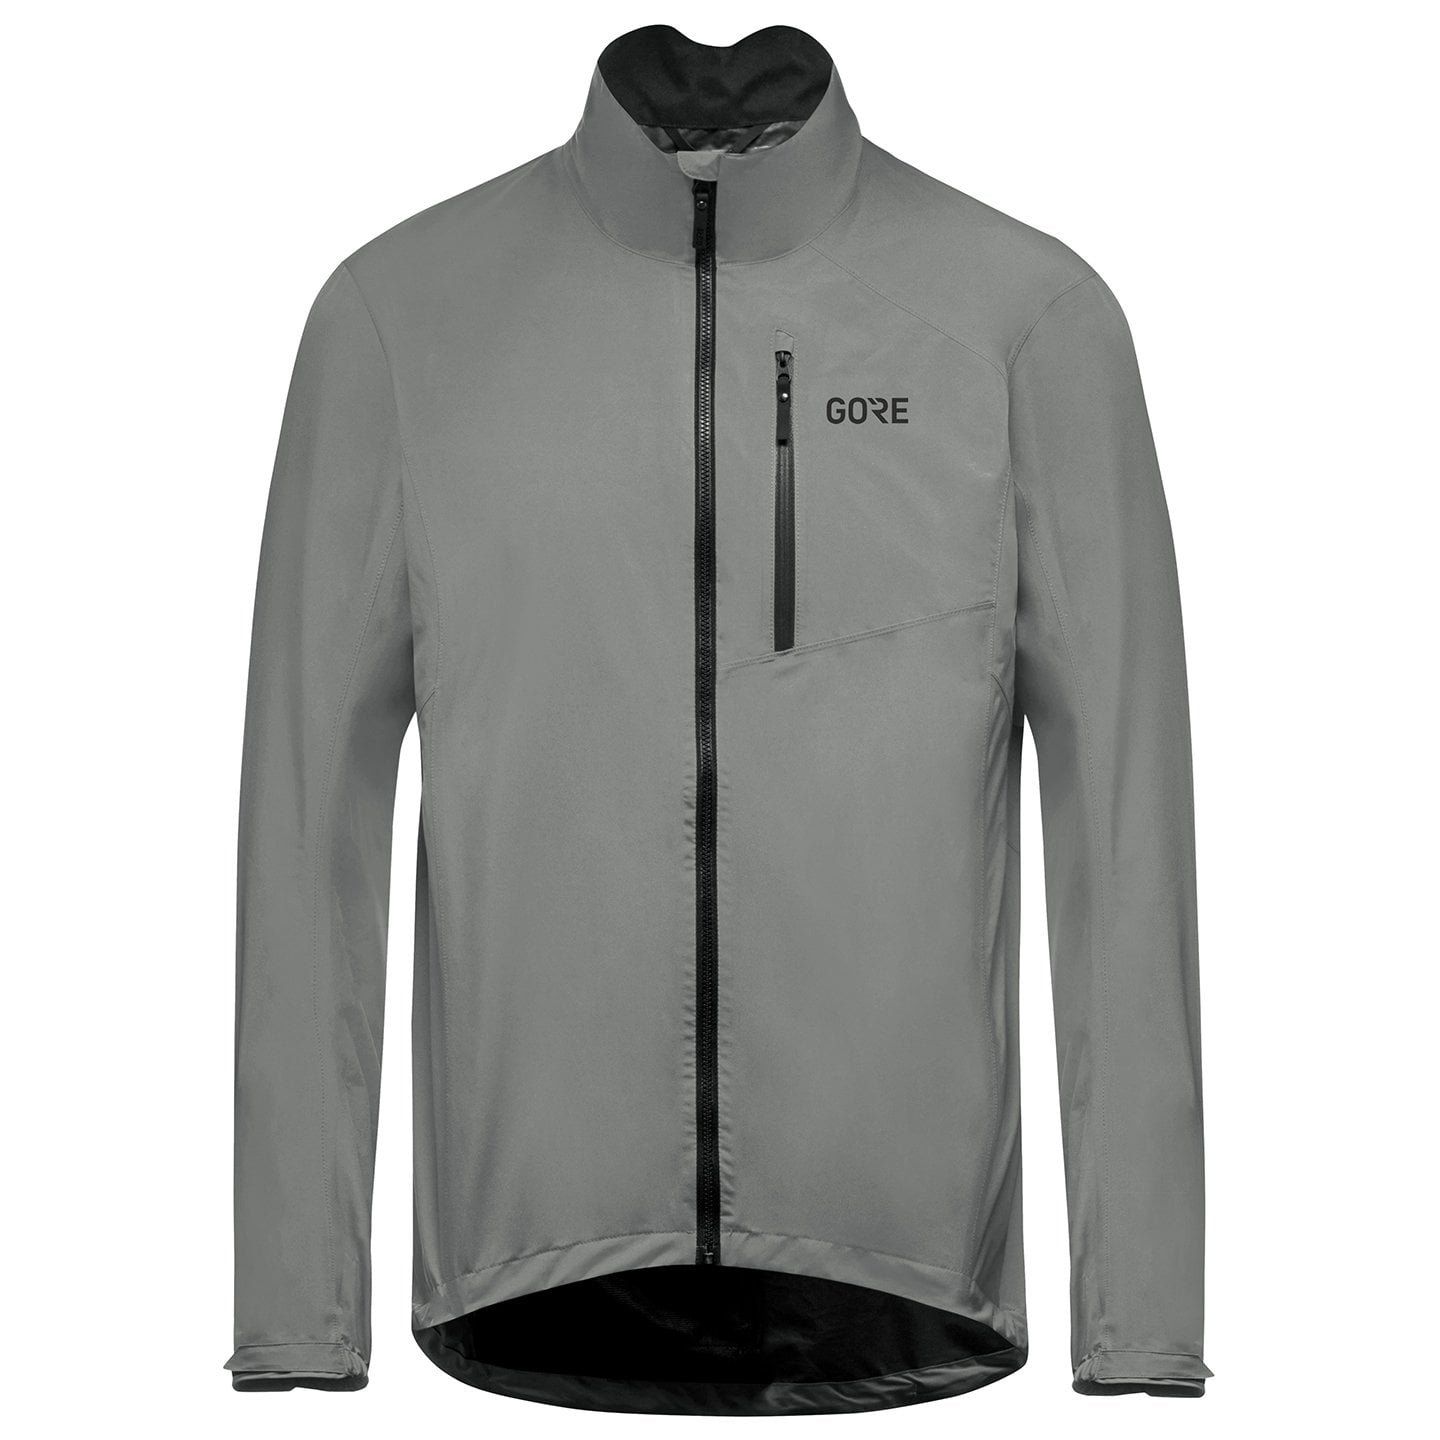 GTX Packlite Waterproof Jacket Waterproof Jacket, for men, size M, Bike jacket, Cycling clothing